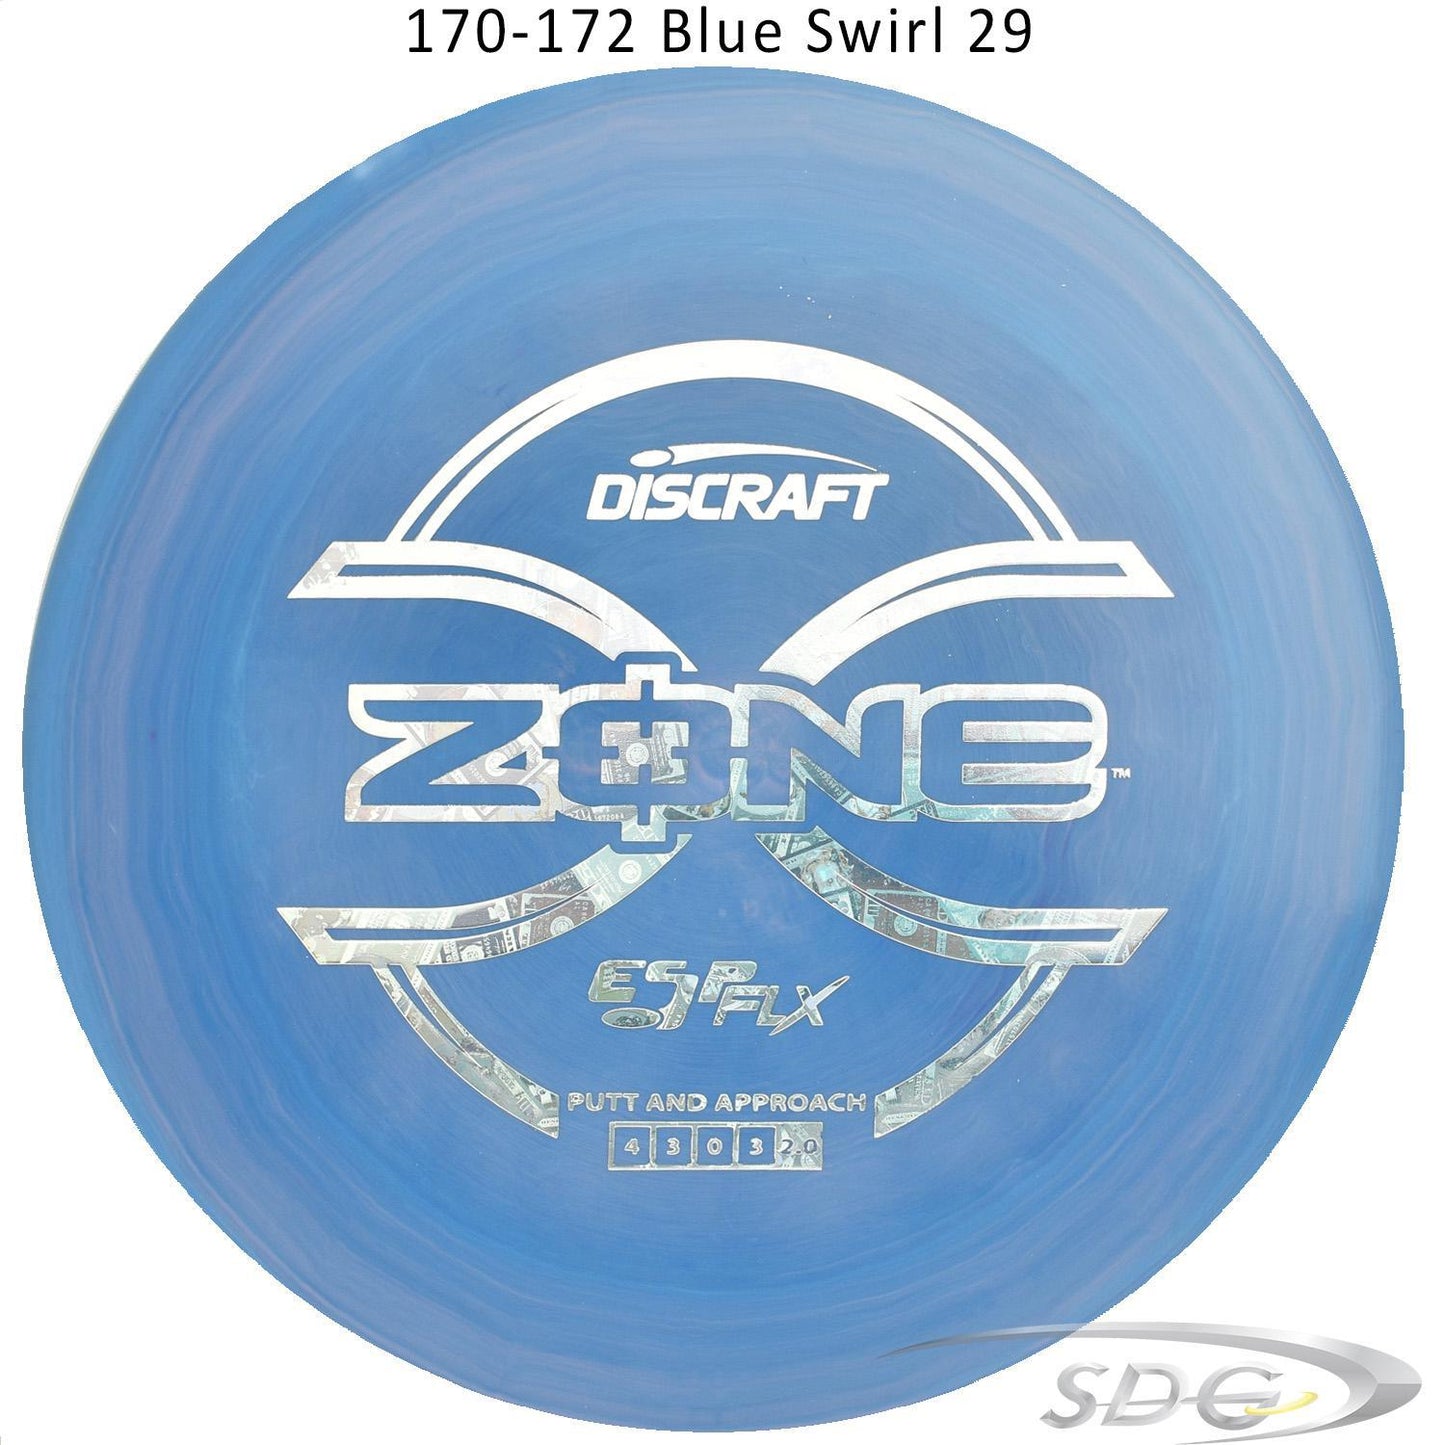 discraft-esp-flx-zone-disc-golf-putter 170-172 Blue Swirl 29